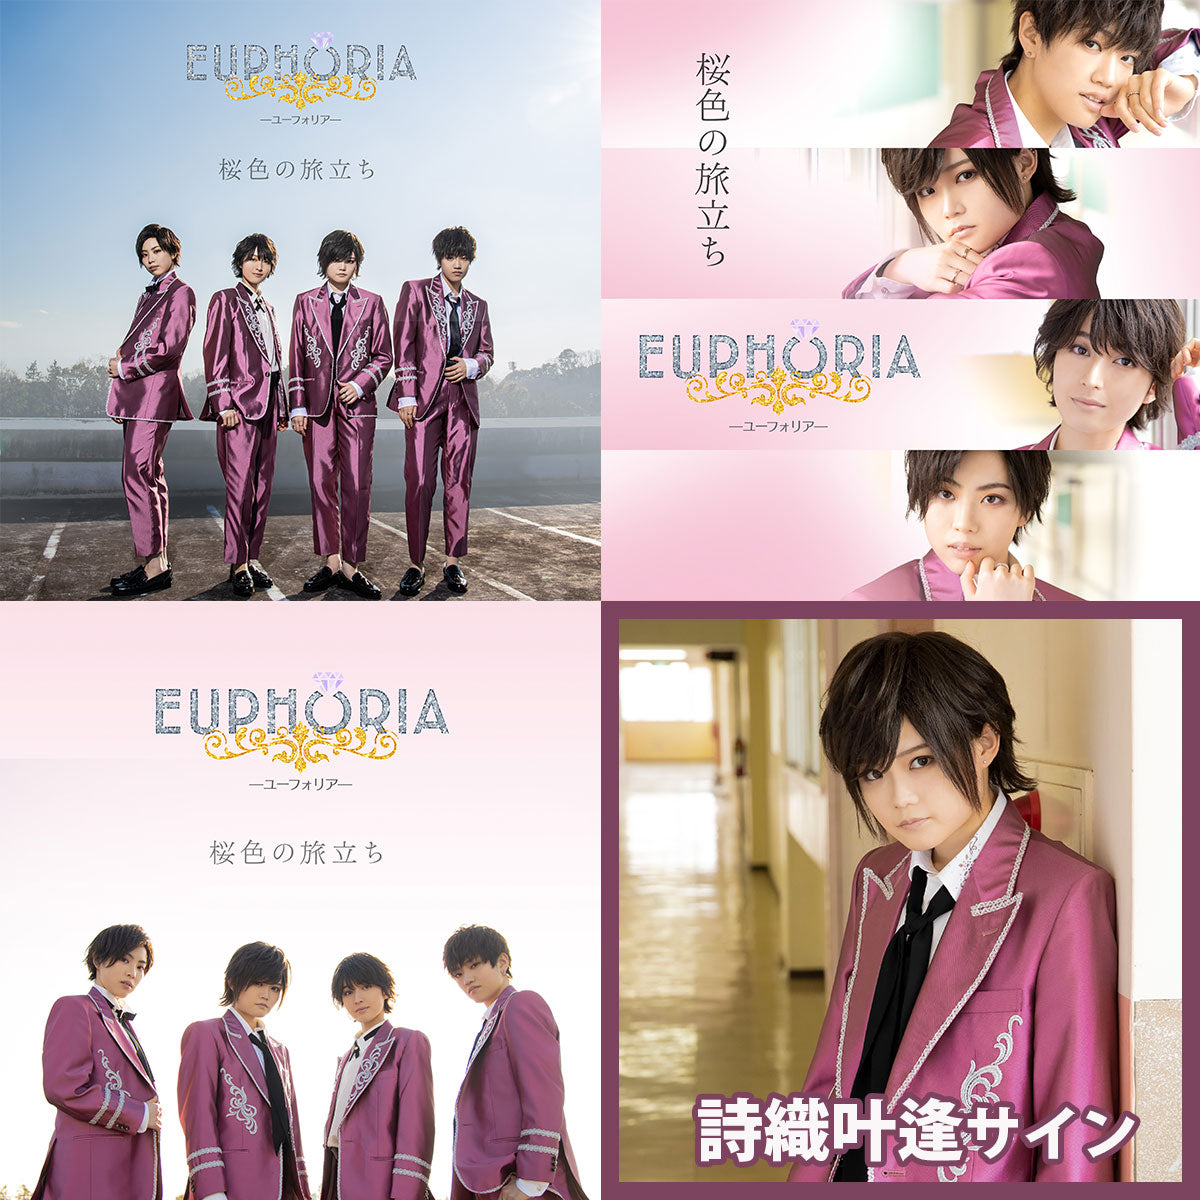 【詩織叶逢サイン】EUPHORIA 3rd Single「桜色の旅立ち」ネットサイン会対象商品